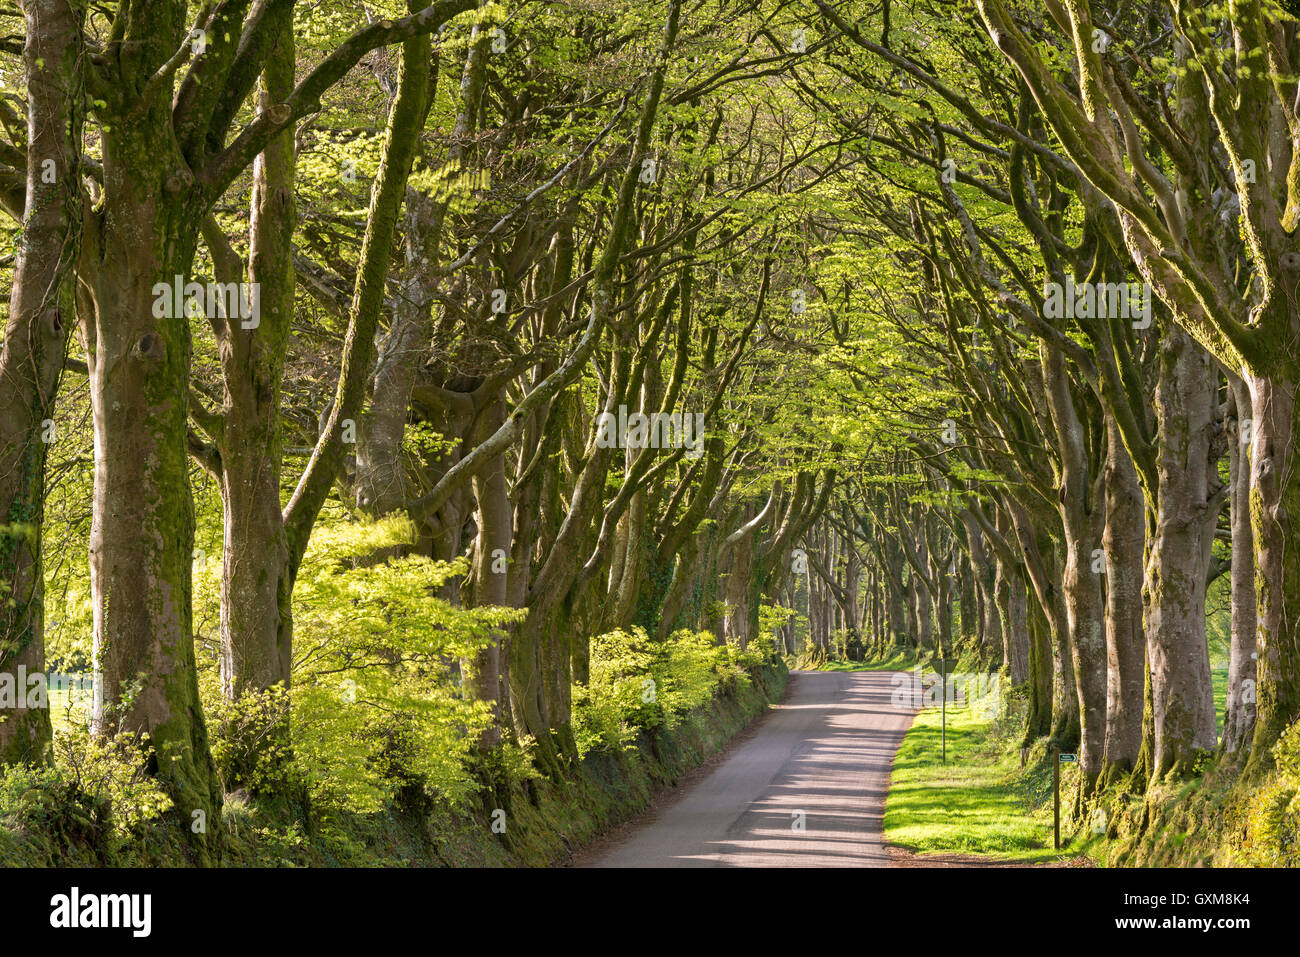 L'Avenue des arbres feuillus matures près de Bridestowe, Dartmoor National Park, Devon, Angleterre. Printemps (avril) 2015. Banque D'Images